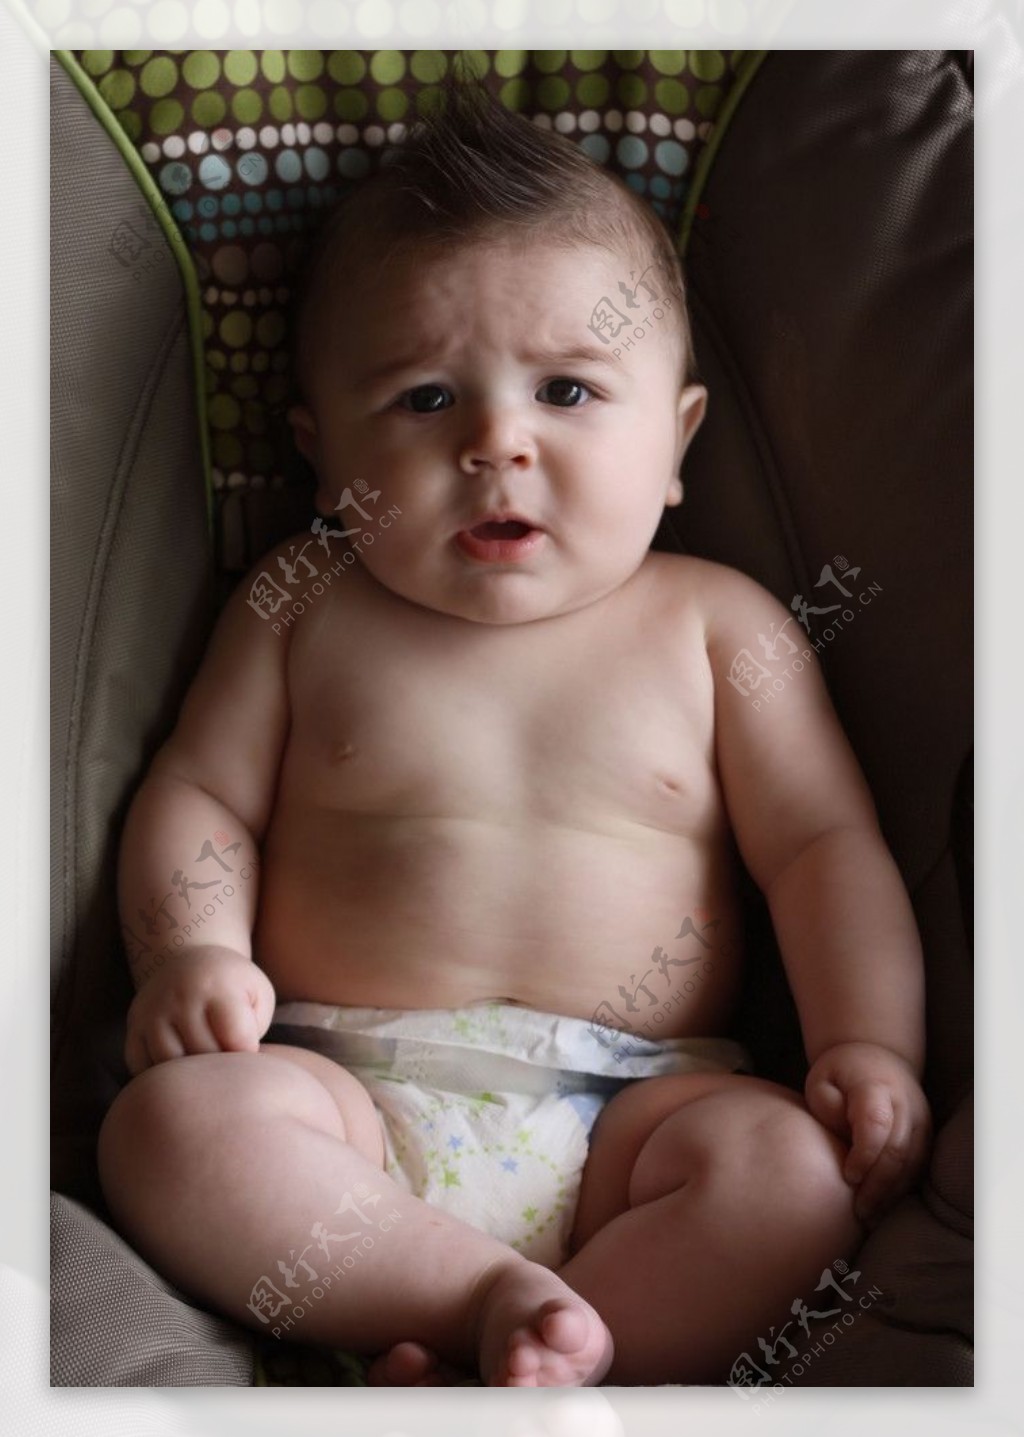 漂亮婴儿宝宝壁纸_可爱婴儿宝宝壁纸_婴儿宝宝桌面壁纸_精彩图文_贵镇图片网